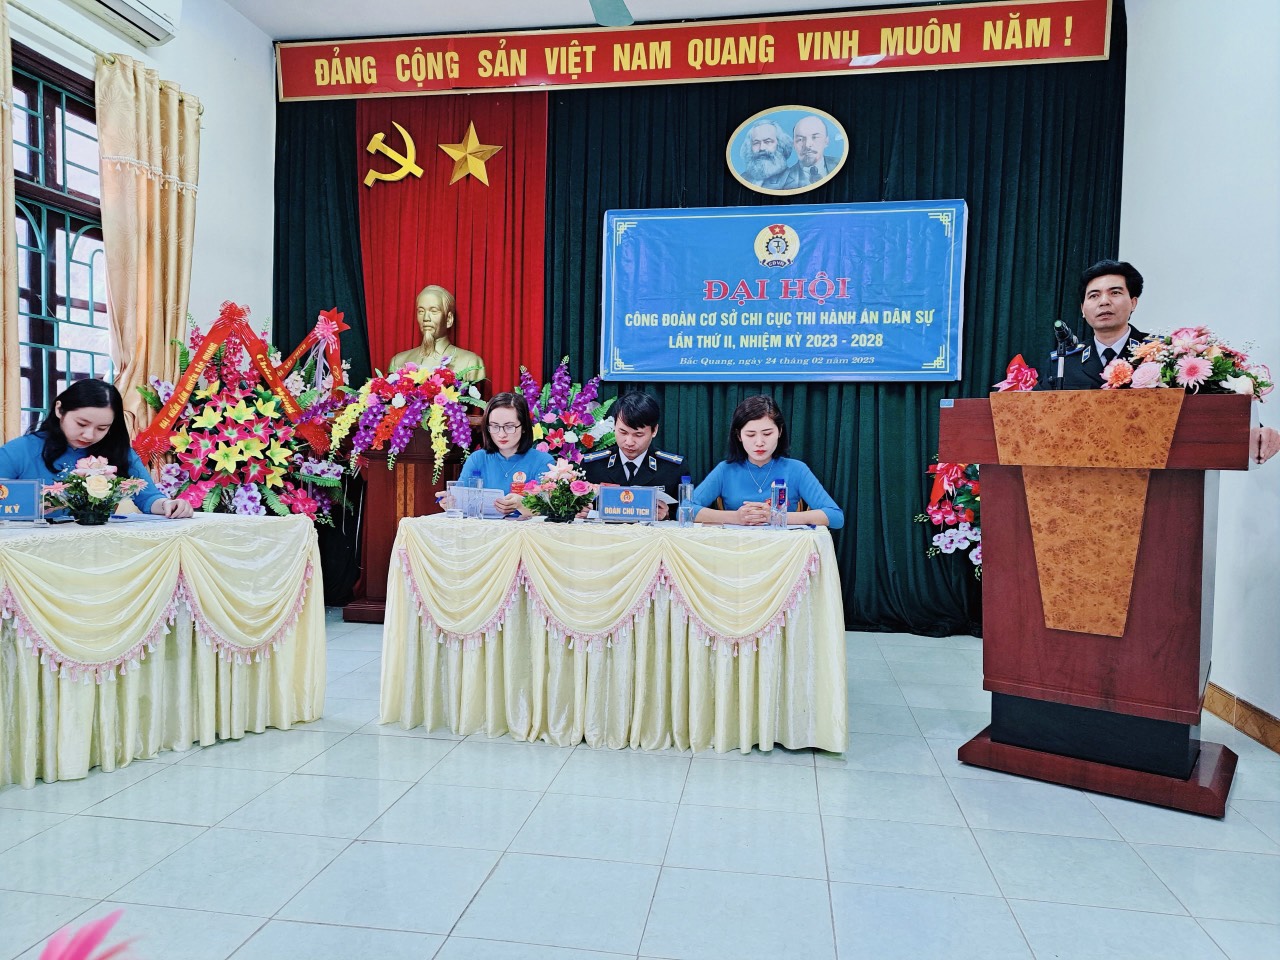 Chi cục Thi hành án dân sự huyện Bắc Quang đã tổ chức Đại hội Công đoàn cơ sở lần thứ II, nhiệm kỳ 2023 - 2028.